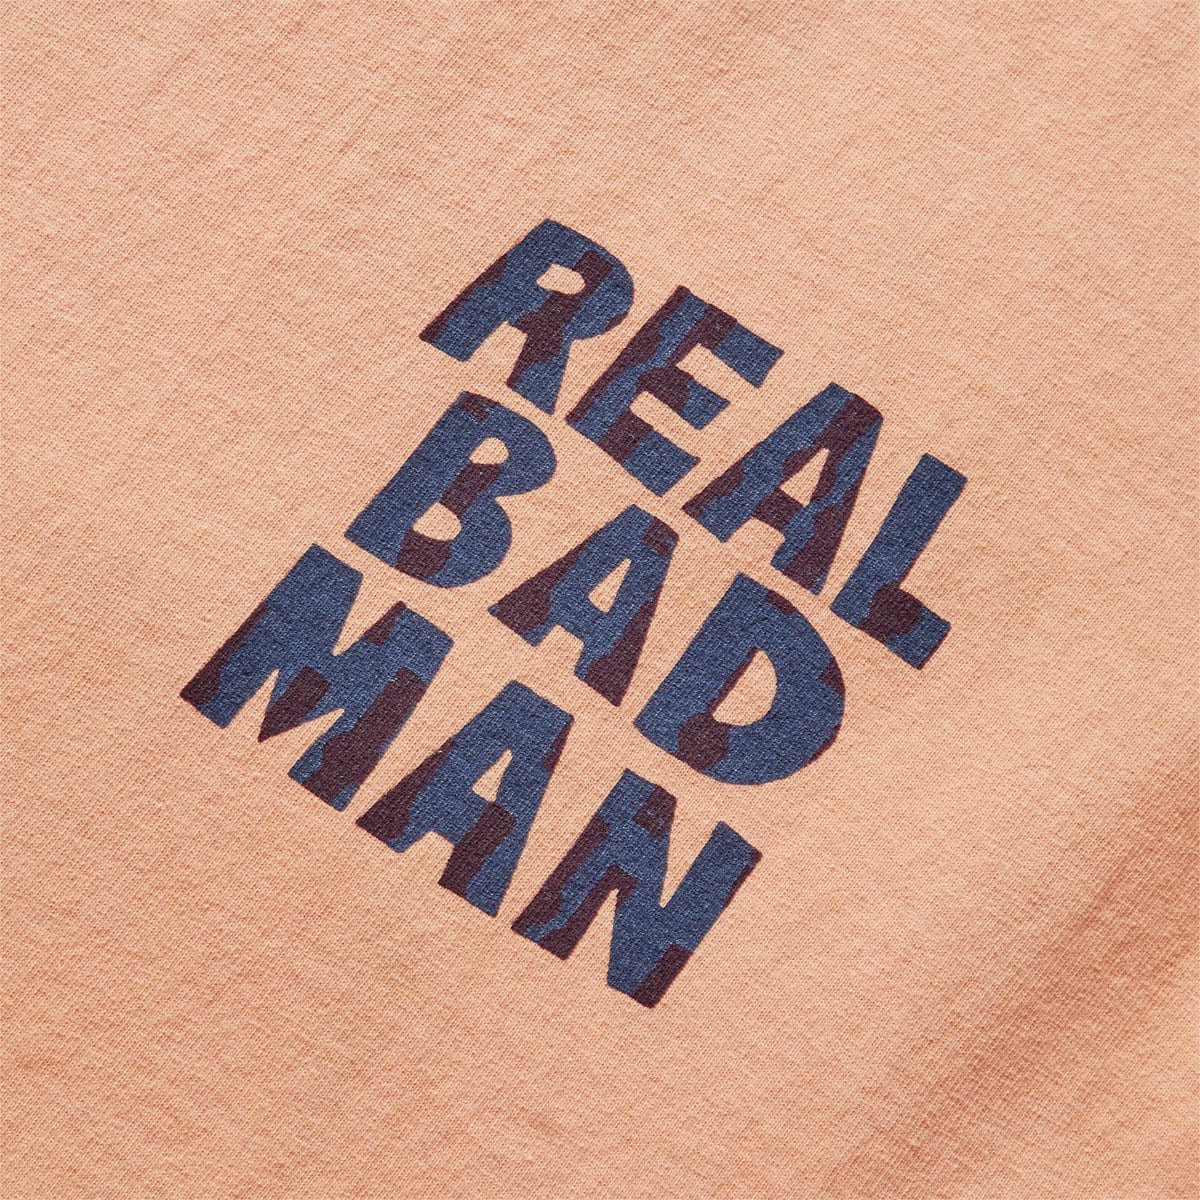 Real Bad Man T-Shirts LOGO VOL 10 TEE